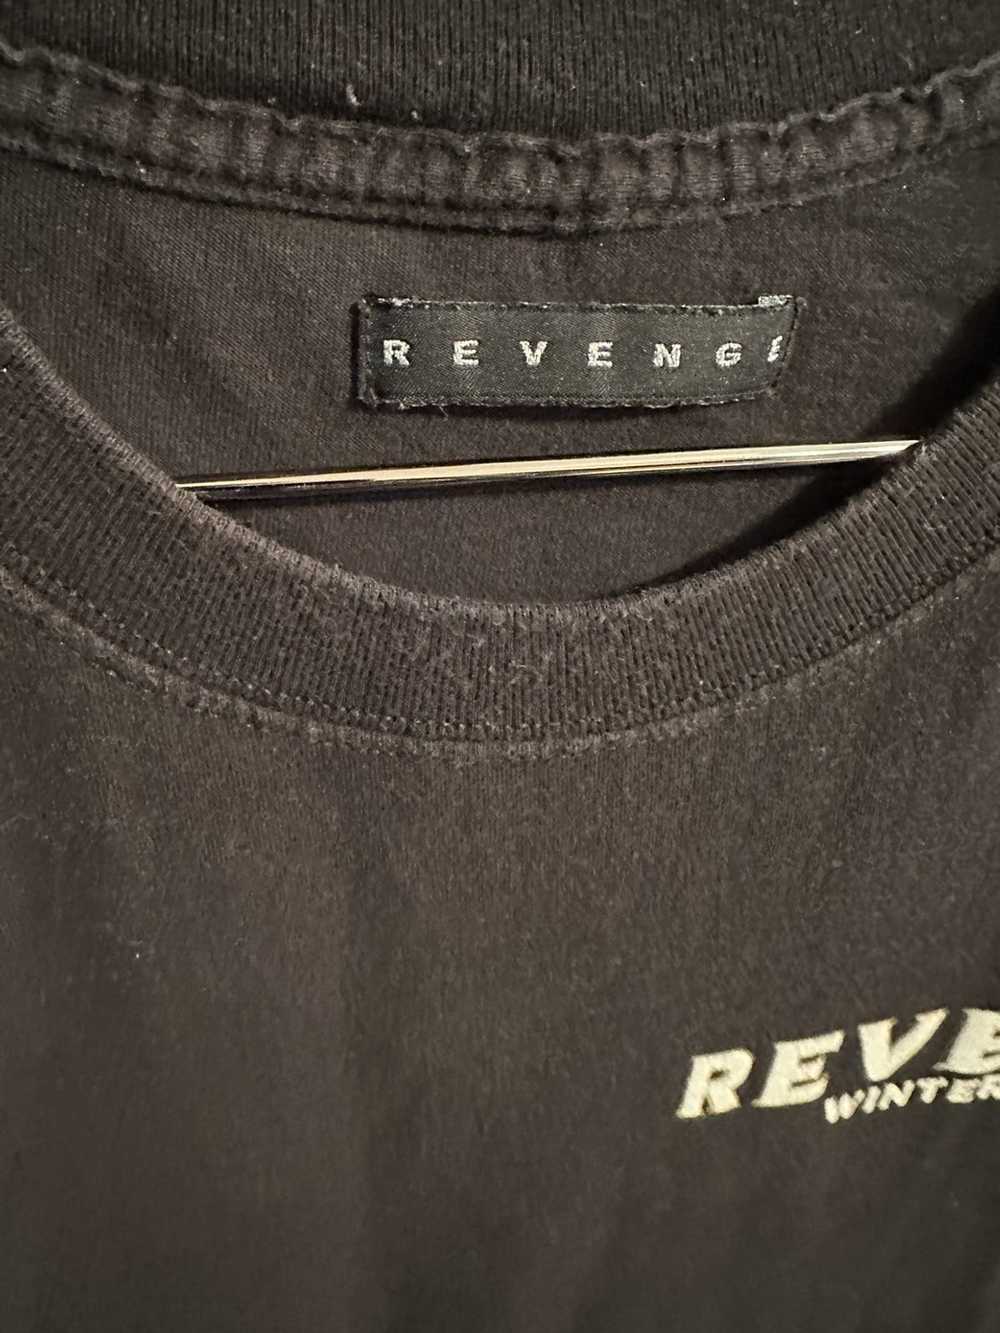 Revenge Revenge - image 3